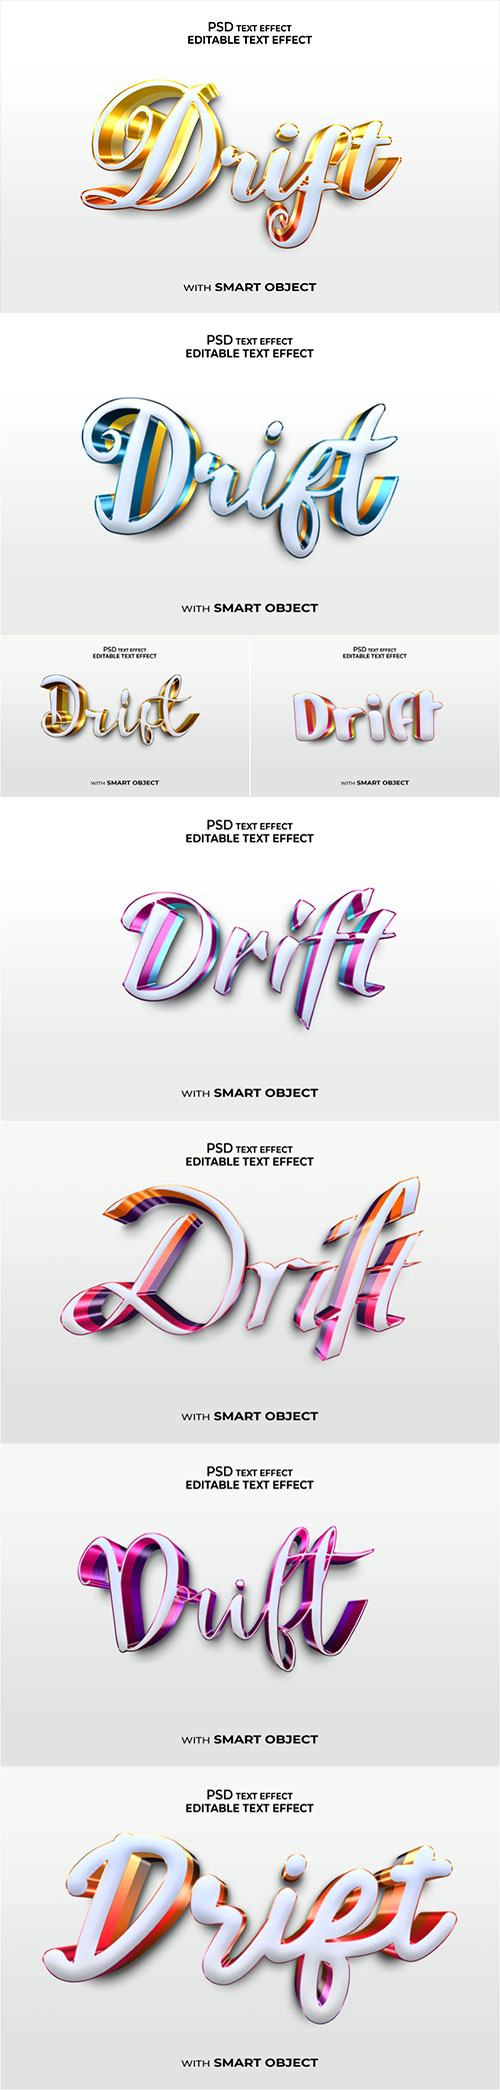 Drift Psd text effect set vol 556